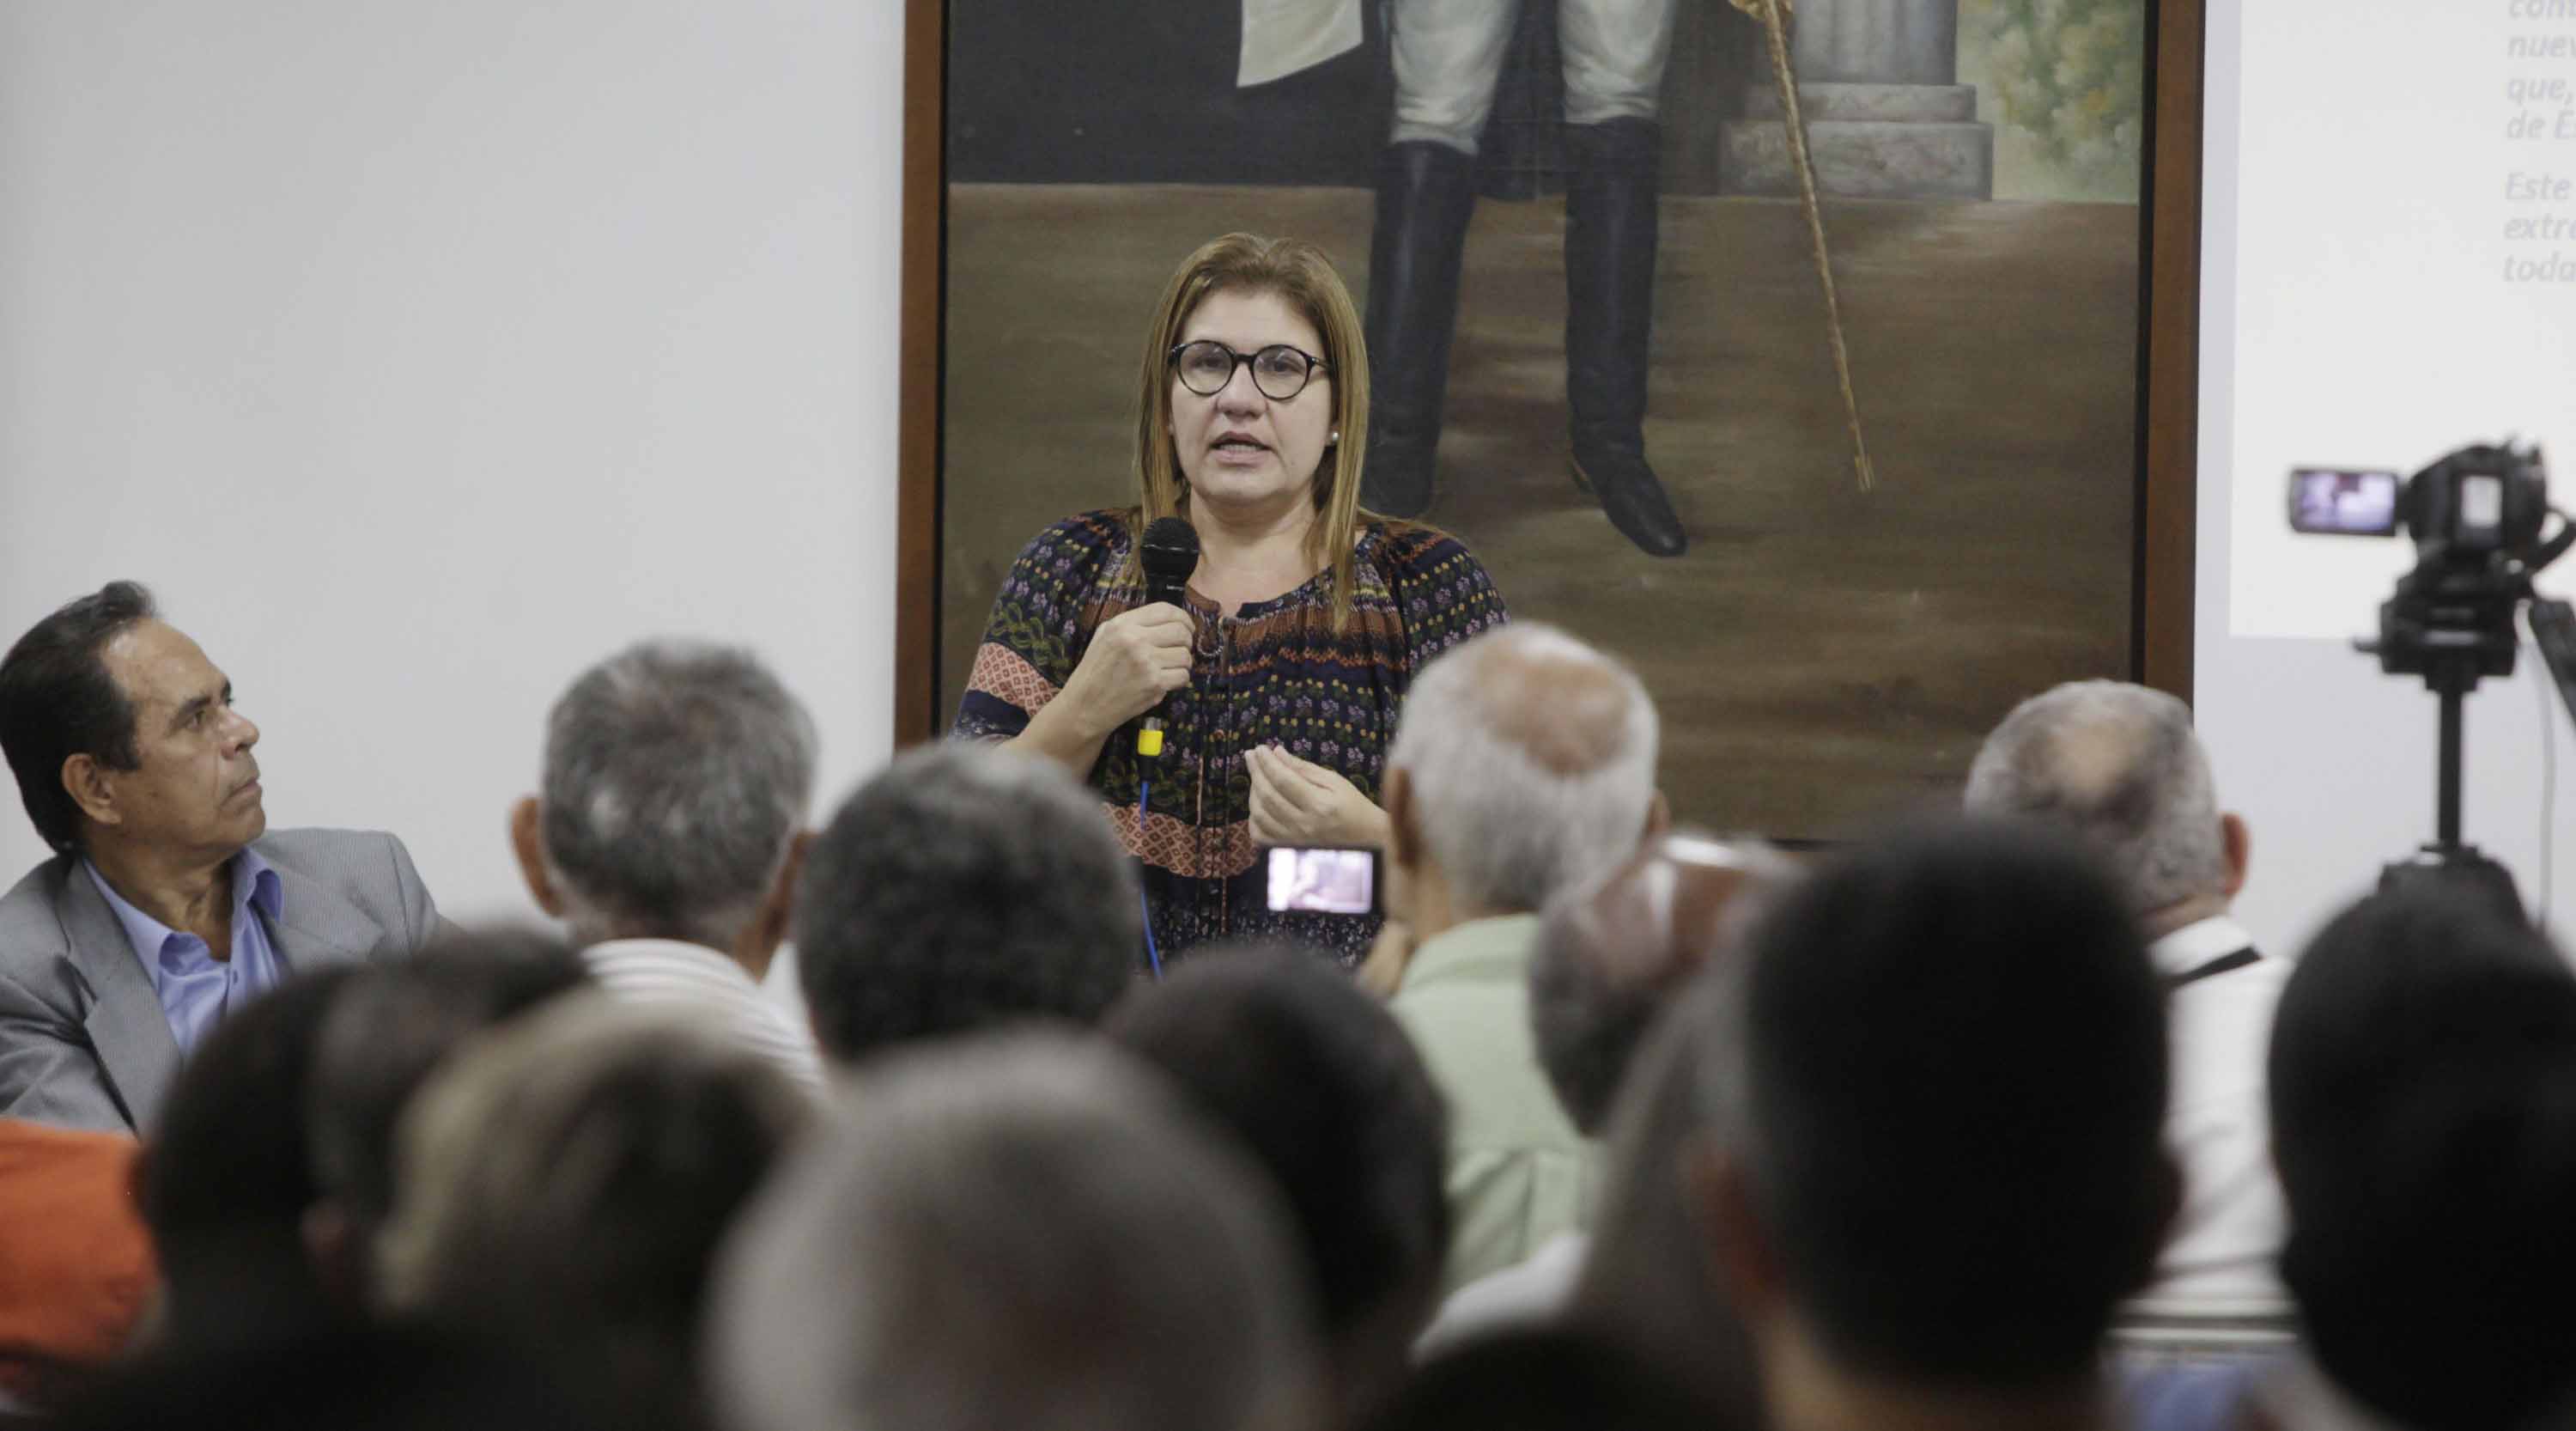 La economista venezolana se encuentra explicando la situación económica del país en varias universidades españolas